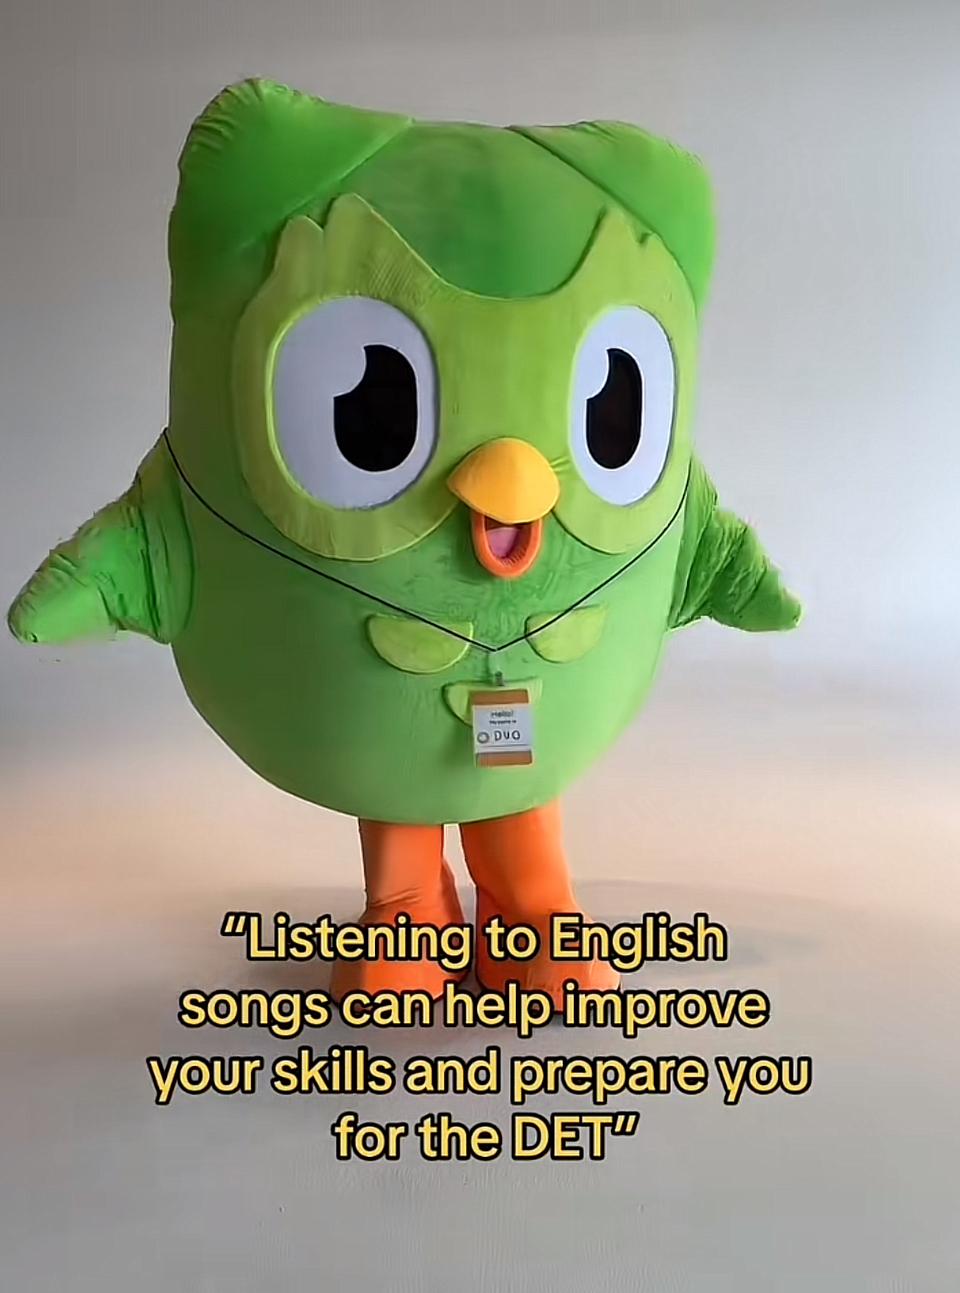 Duolingo English Test on TikTok